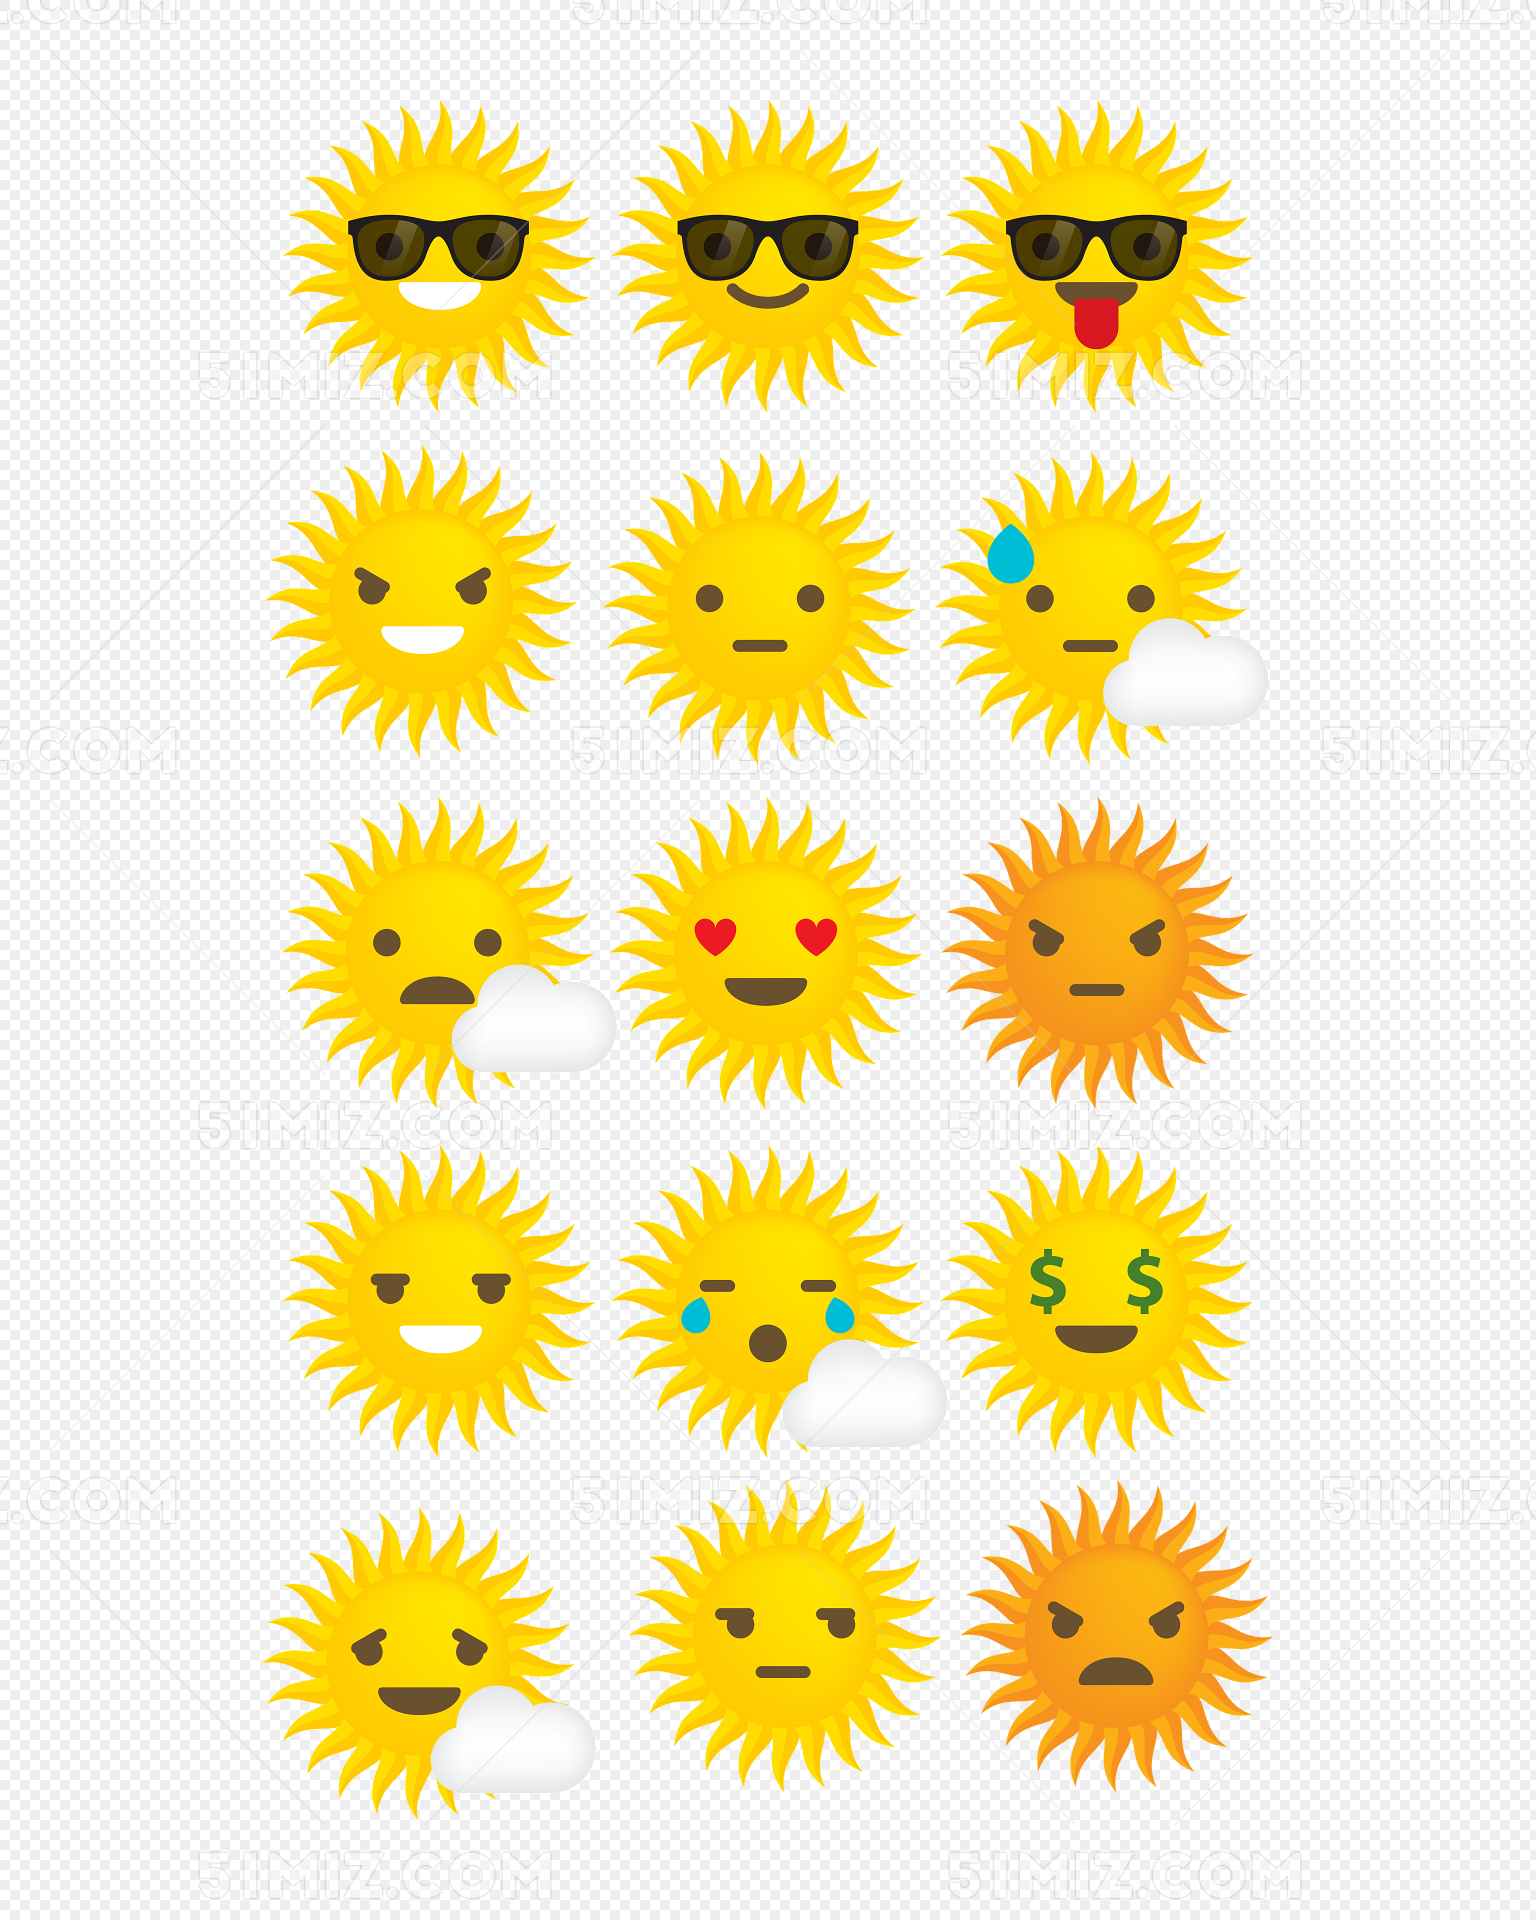 笑黄色太阳卡通表情表情符号 向量例证. 插画 包括有 简单, 特征, 吉祥人, 星形, 太阳, 平面, 例证 - 182685335